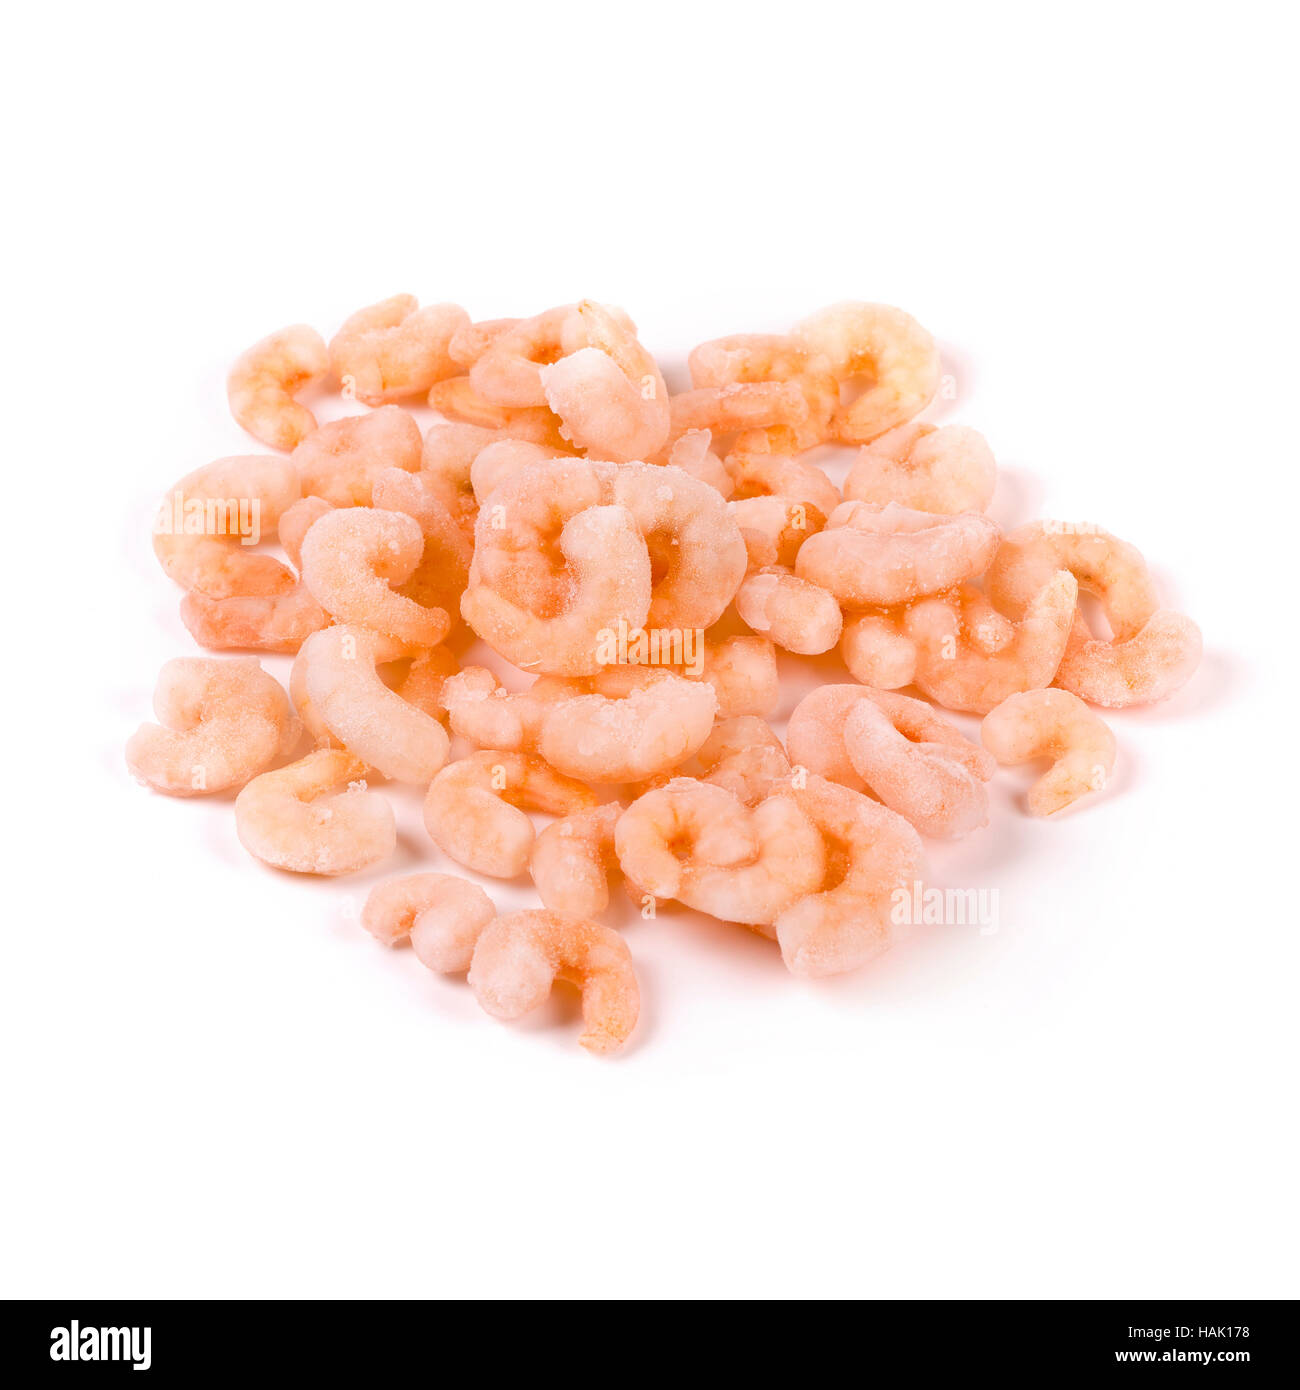 frozen shrimps isolated on white background Stock Photo